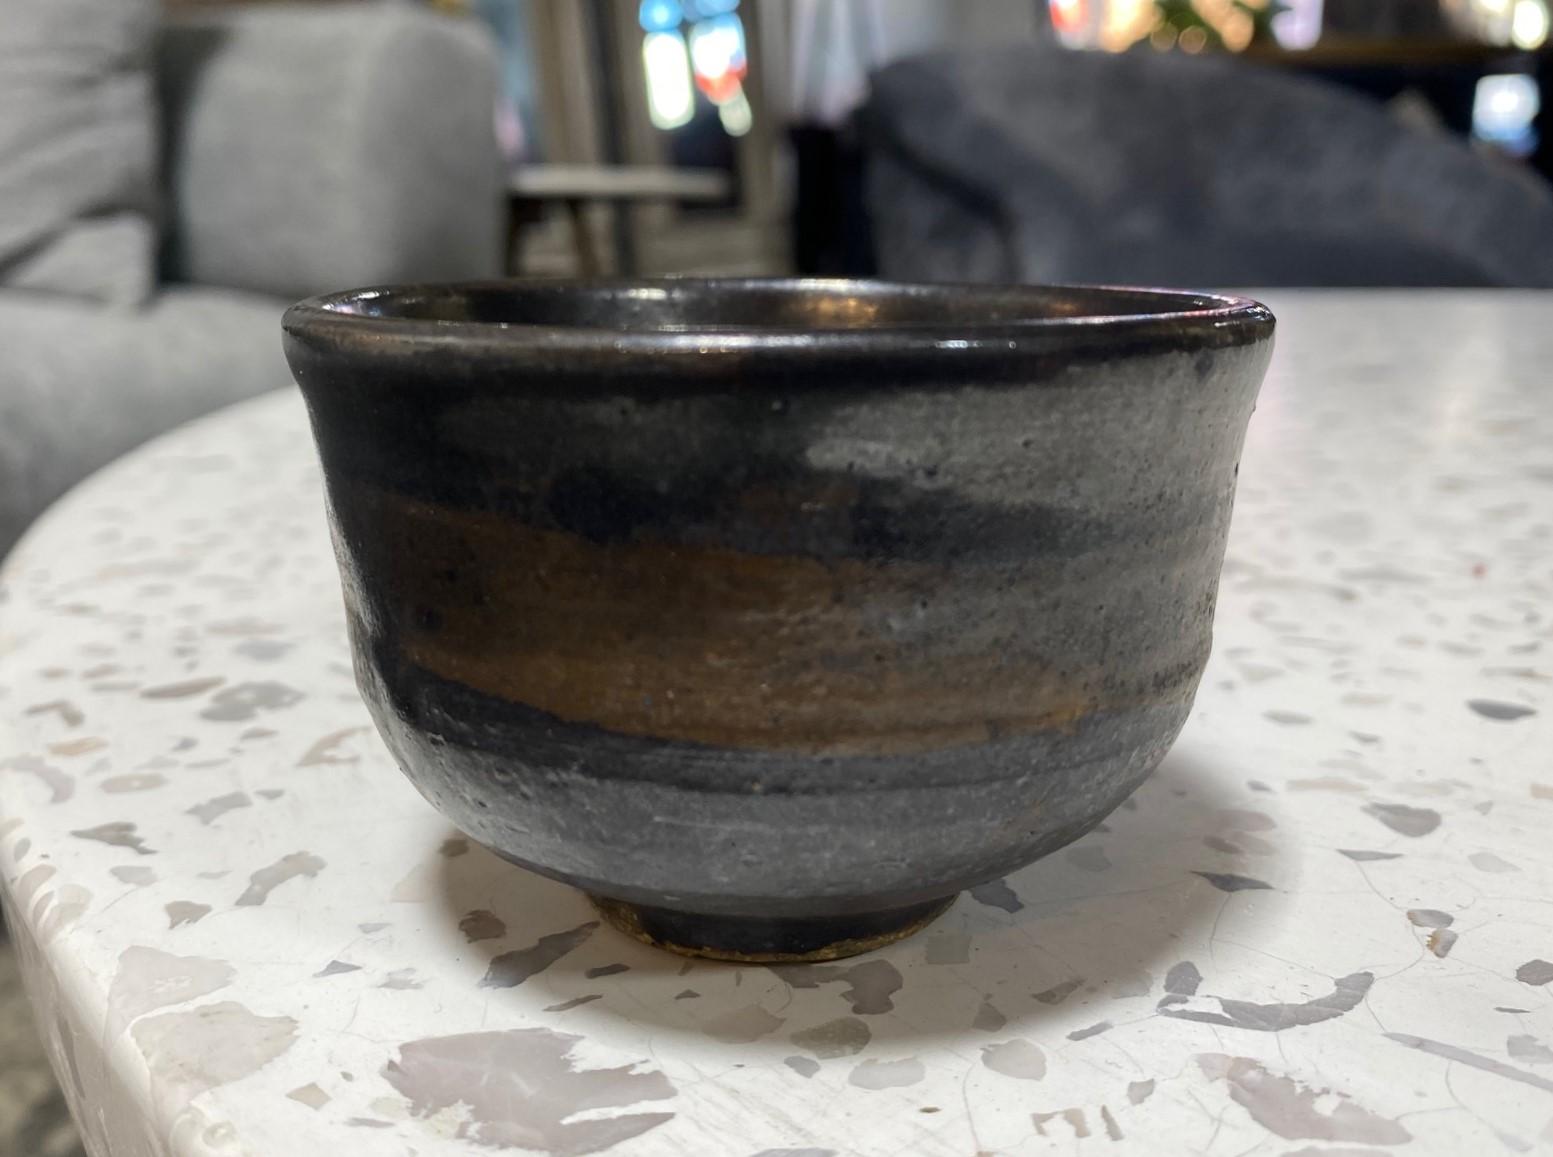 Un magnifique bol à thé chawan / tasse yunomi du célèbre maître de la poterie américano-japonaise Toshiko Takaezu. L'œuvre présente une riche glaçure tenmoku noire et mate avec des éclaboussures de couleurs brossées. Il s'agit d'une œuvre unique en